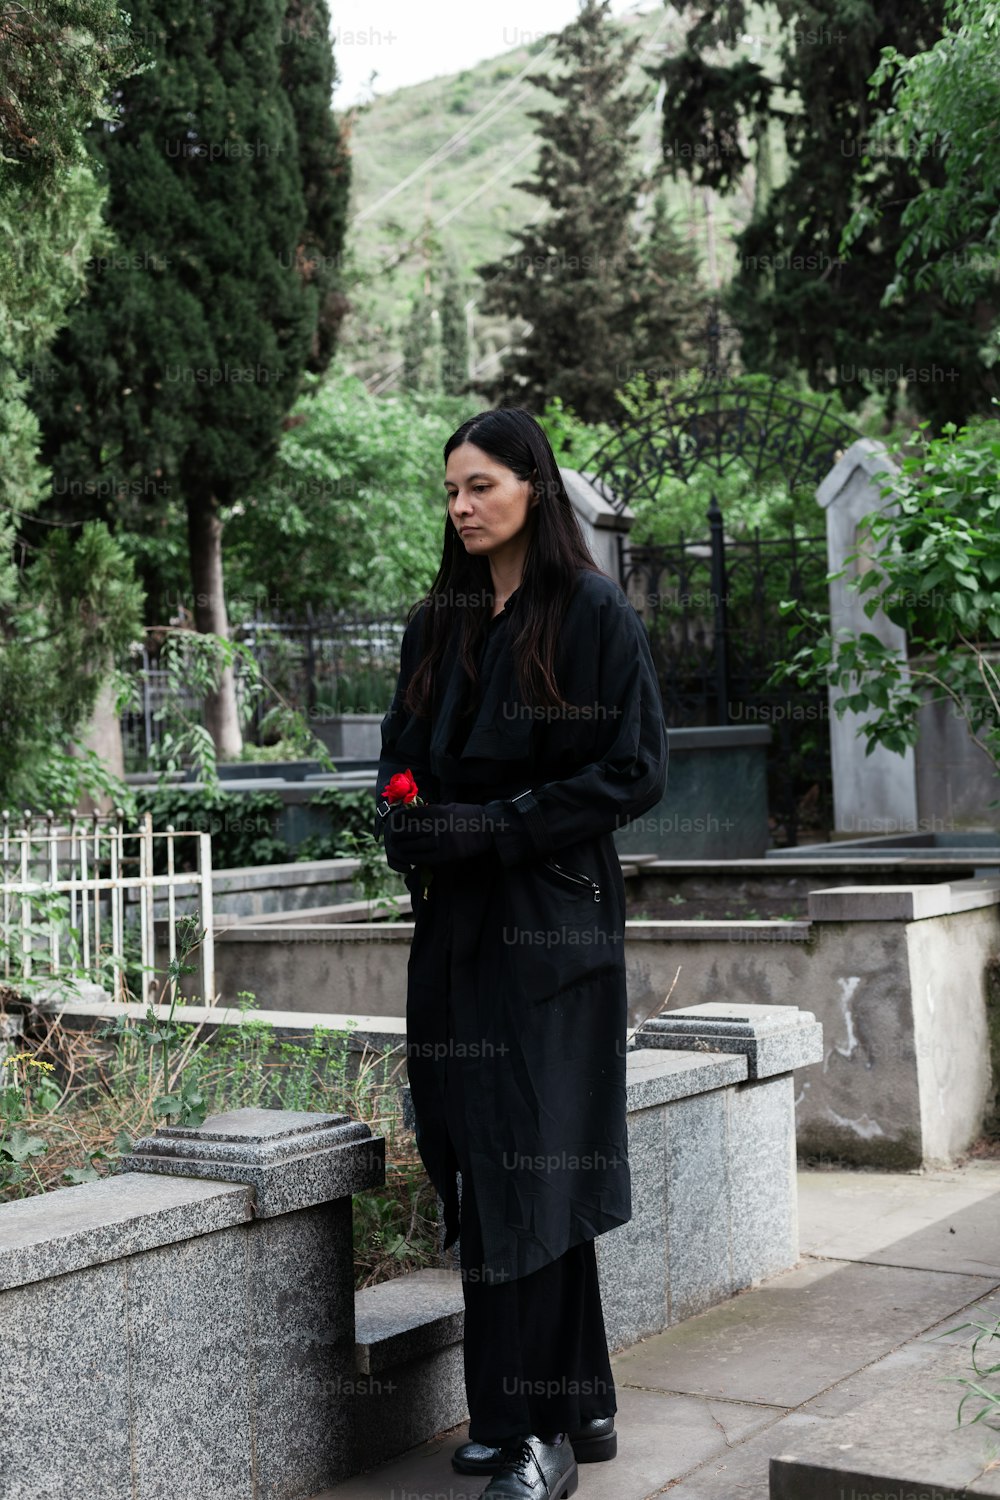 Eine Frau in einem langen schwarzen Mantel steht auf einer Steinbank